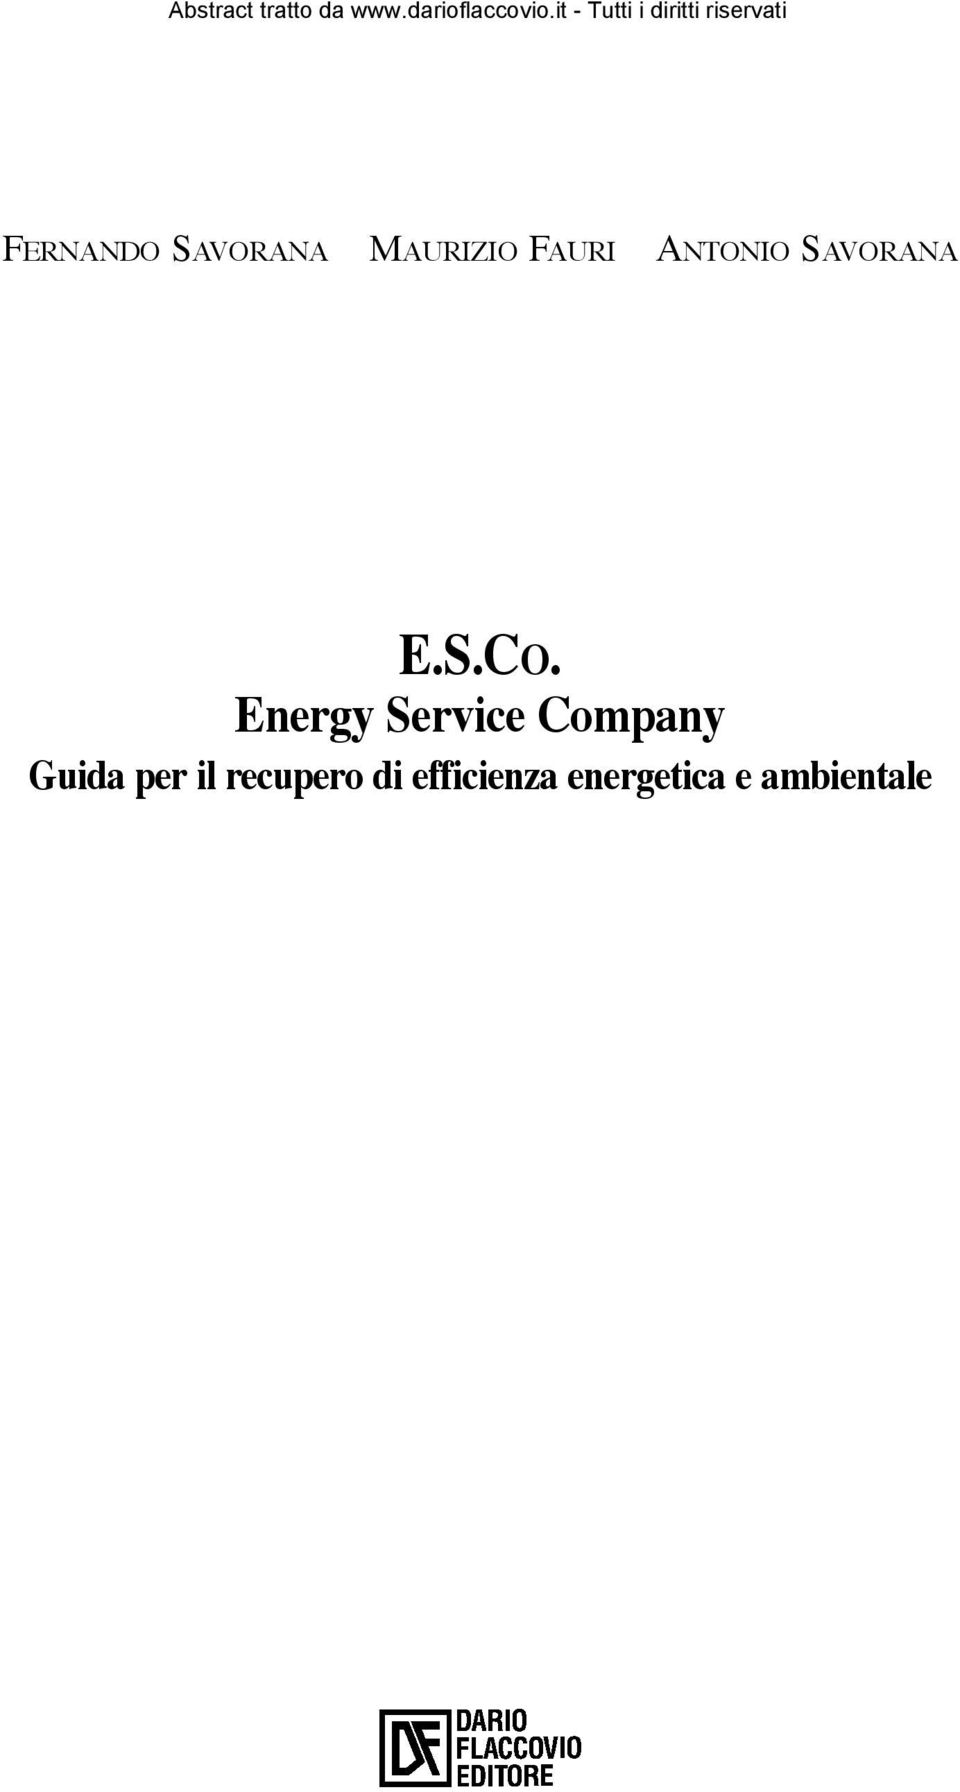 Energy Service Company Guida per il